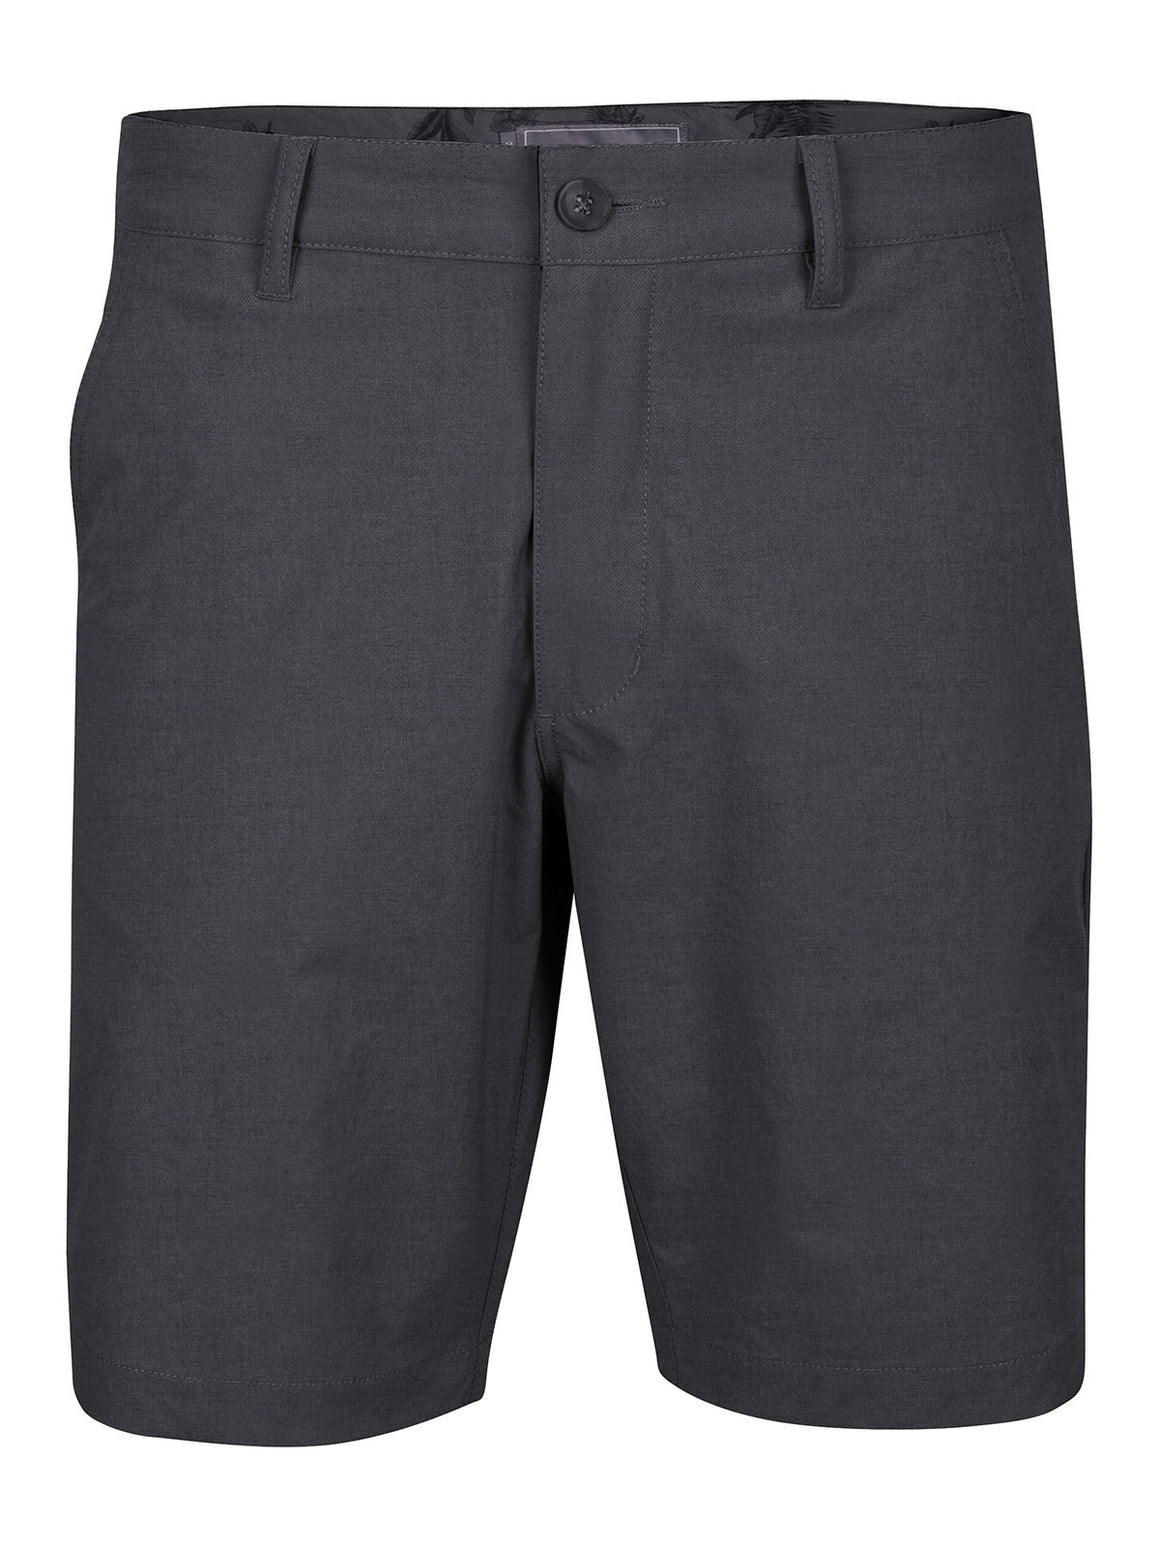 Matte Grey Men's Shorts - Haus of Grey